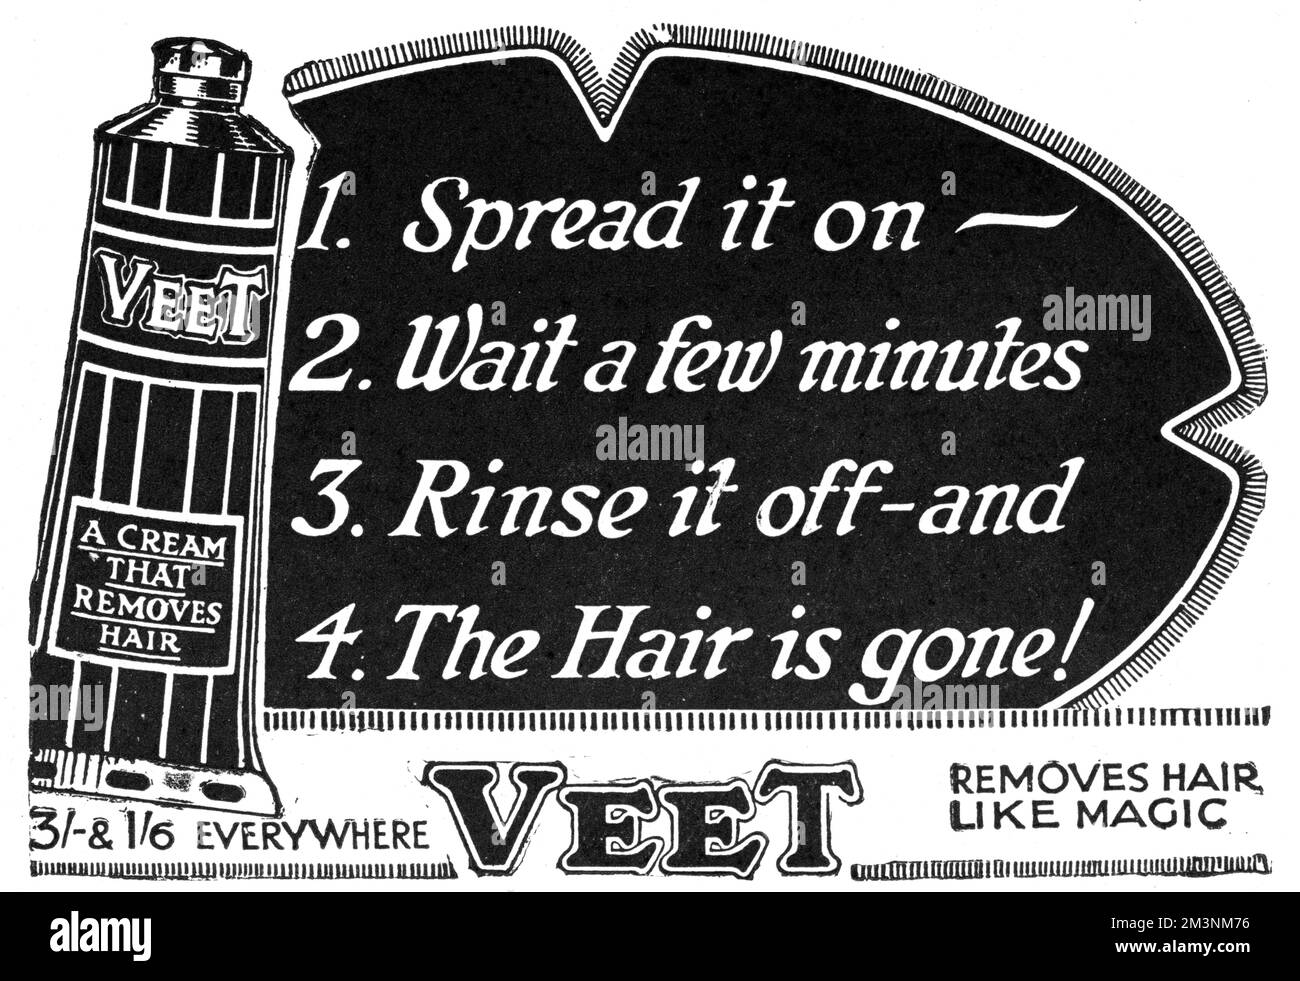 Una crema che rimuove i capelli come magia! Data: 1927 Foto Stock